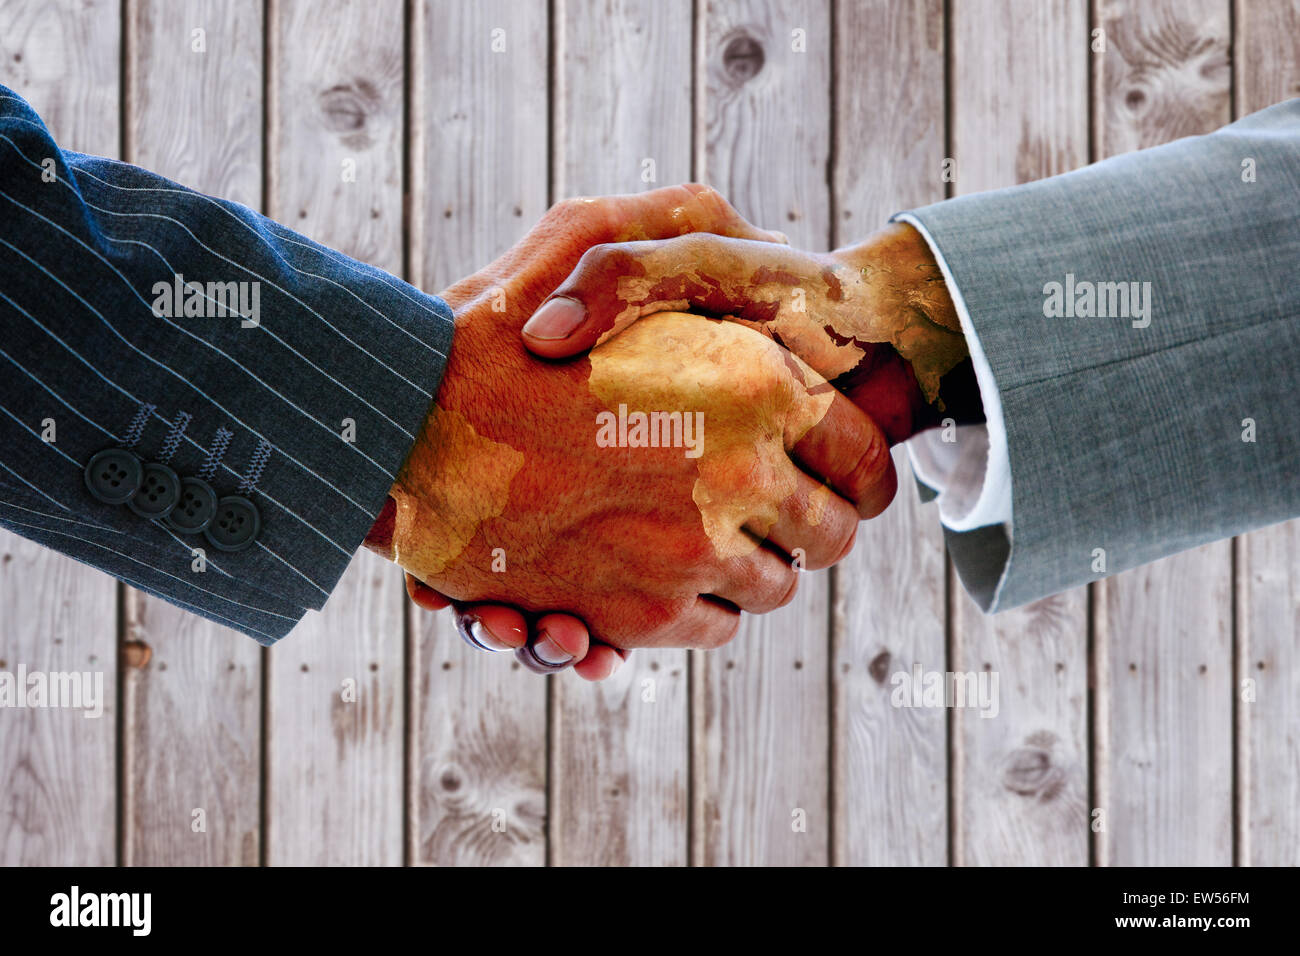 Immagine composita di uomini di affari che stringono le mani Foto Stock